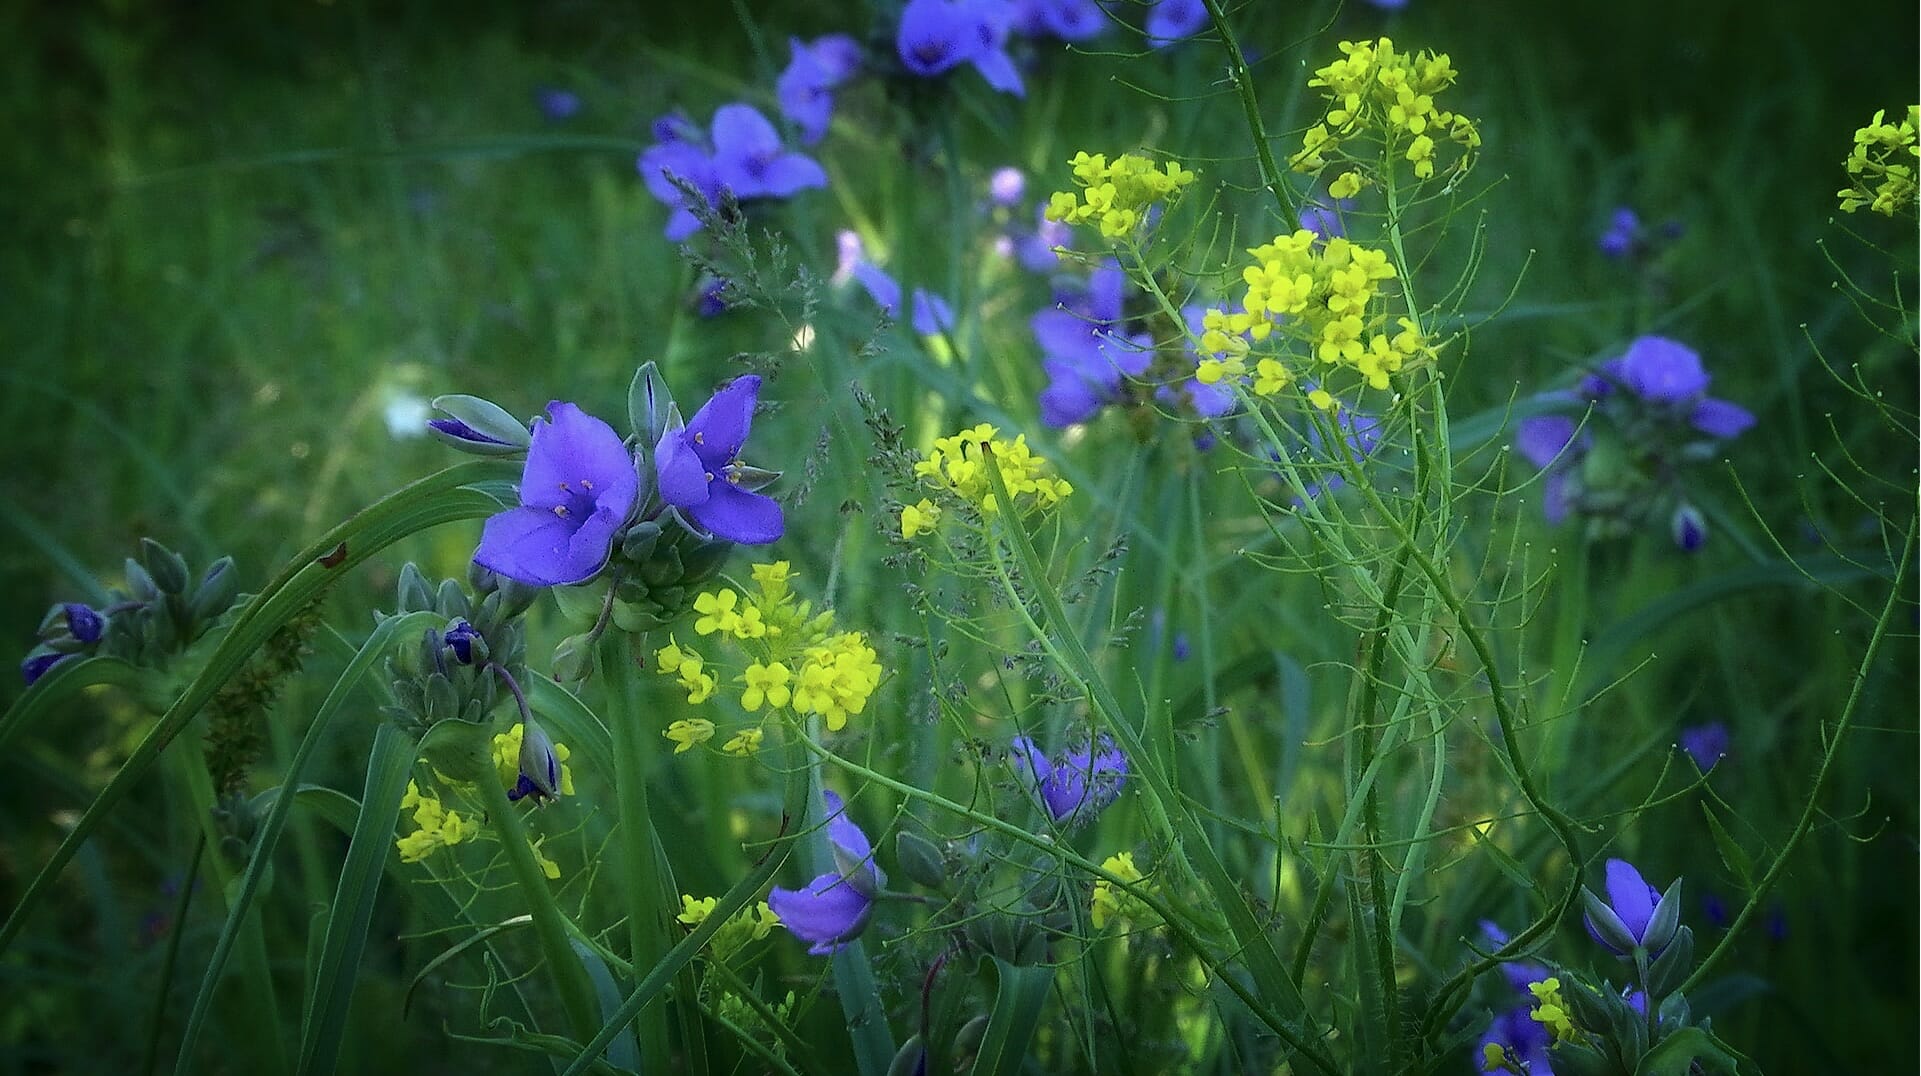 prairie wildflowers